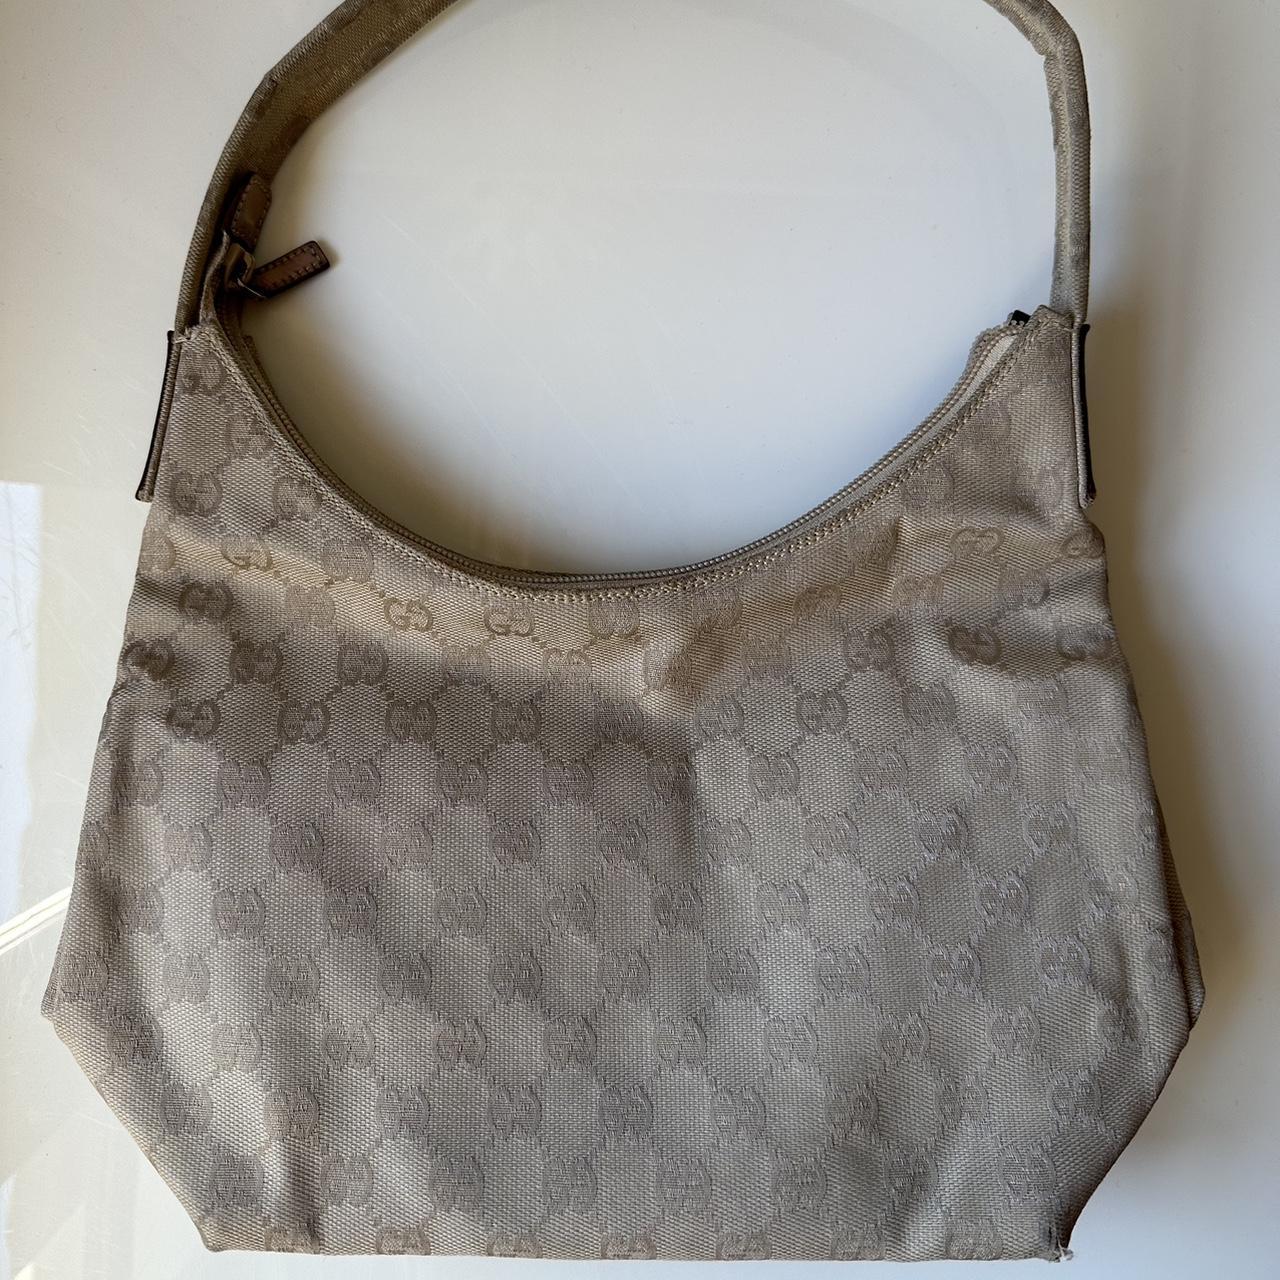 Gucci Original Vintage Handbags